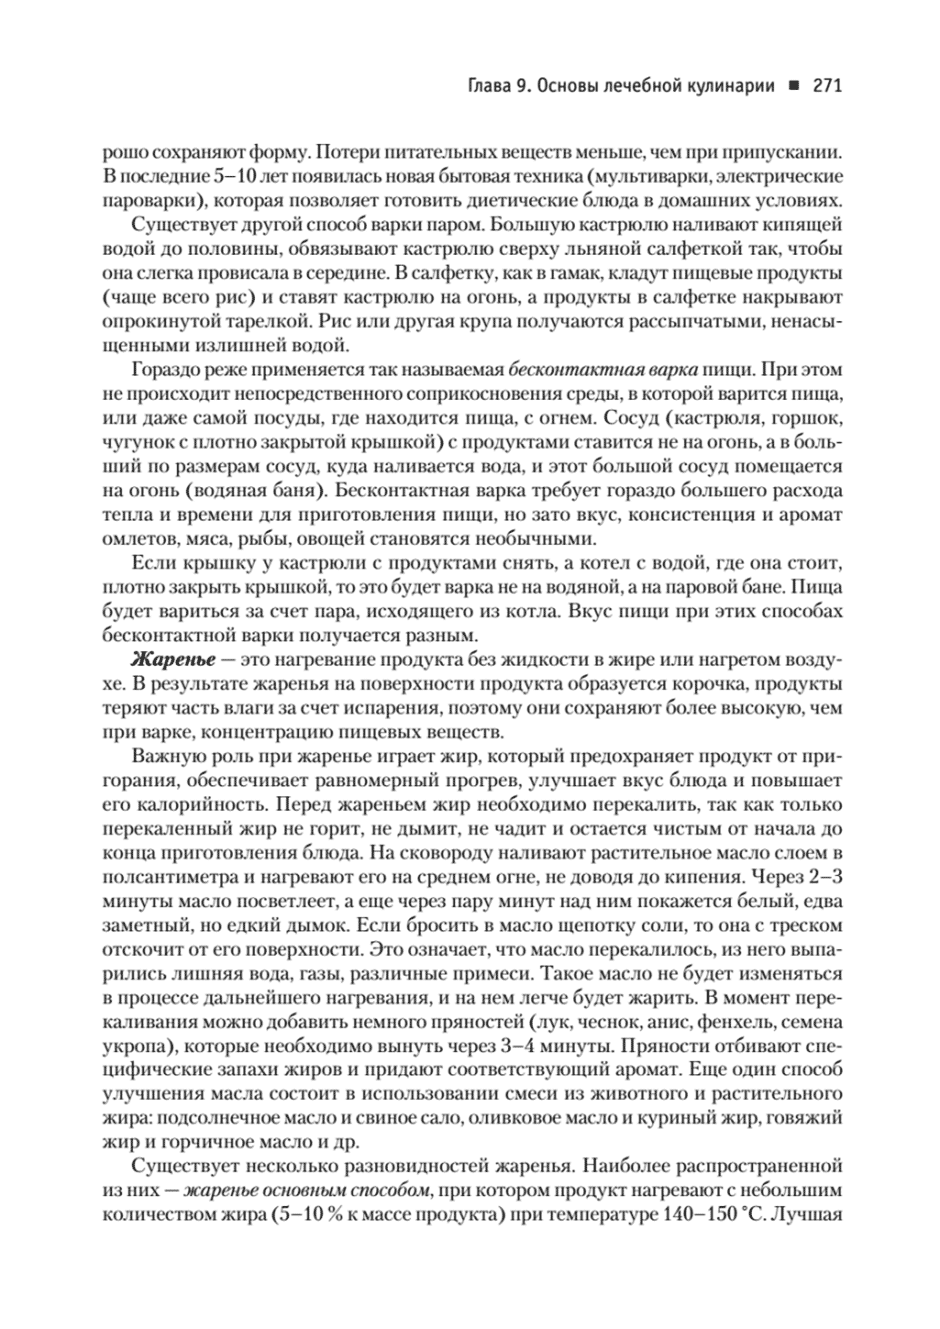 Пример страницы из книги "Диетология" - Барановский А. Ю.